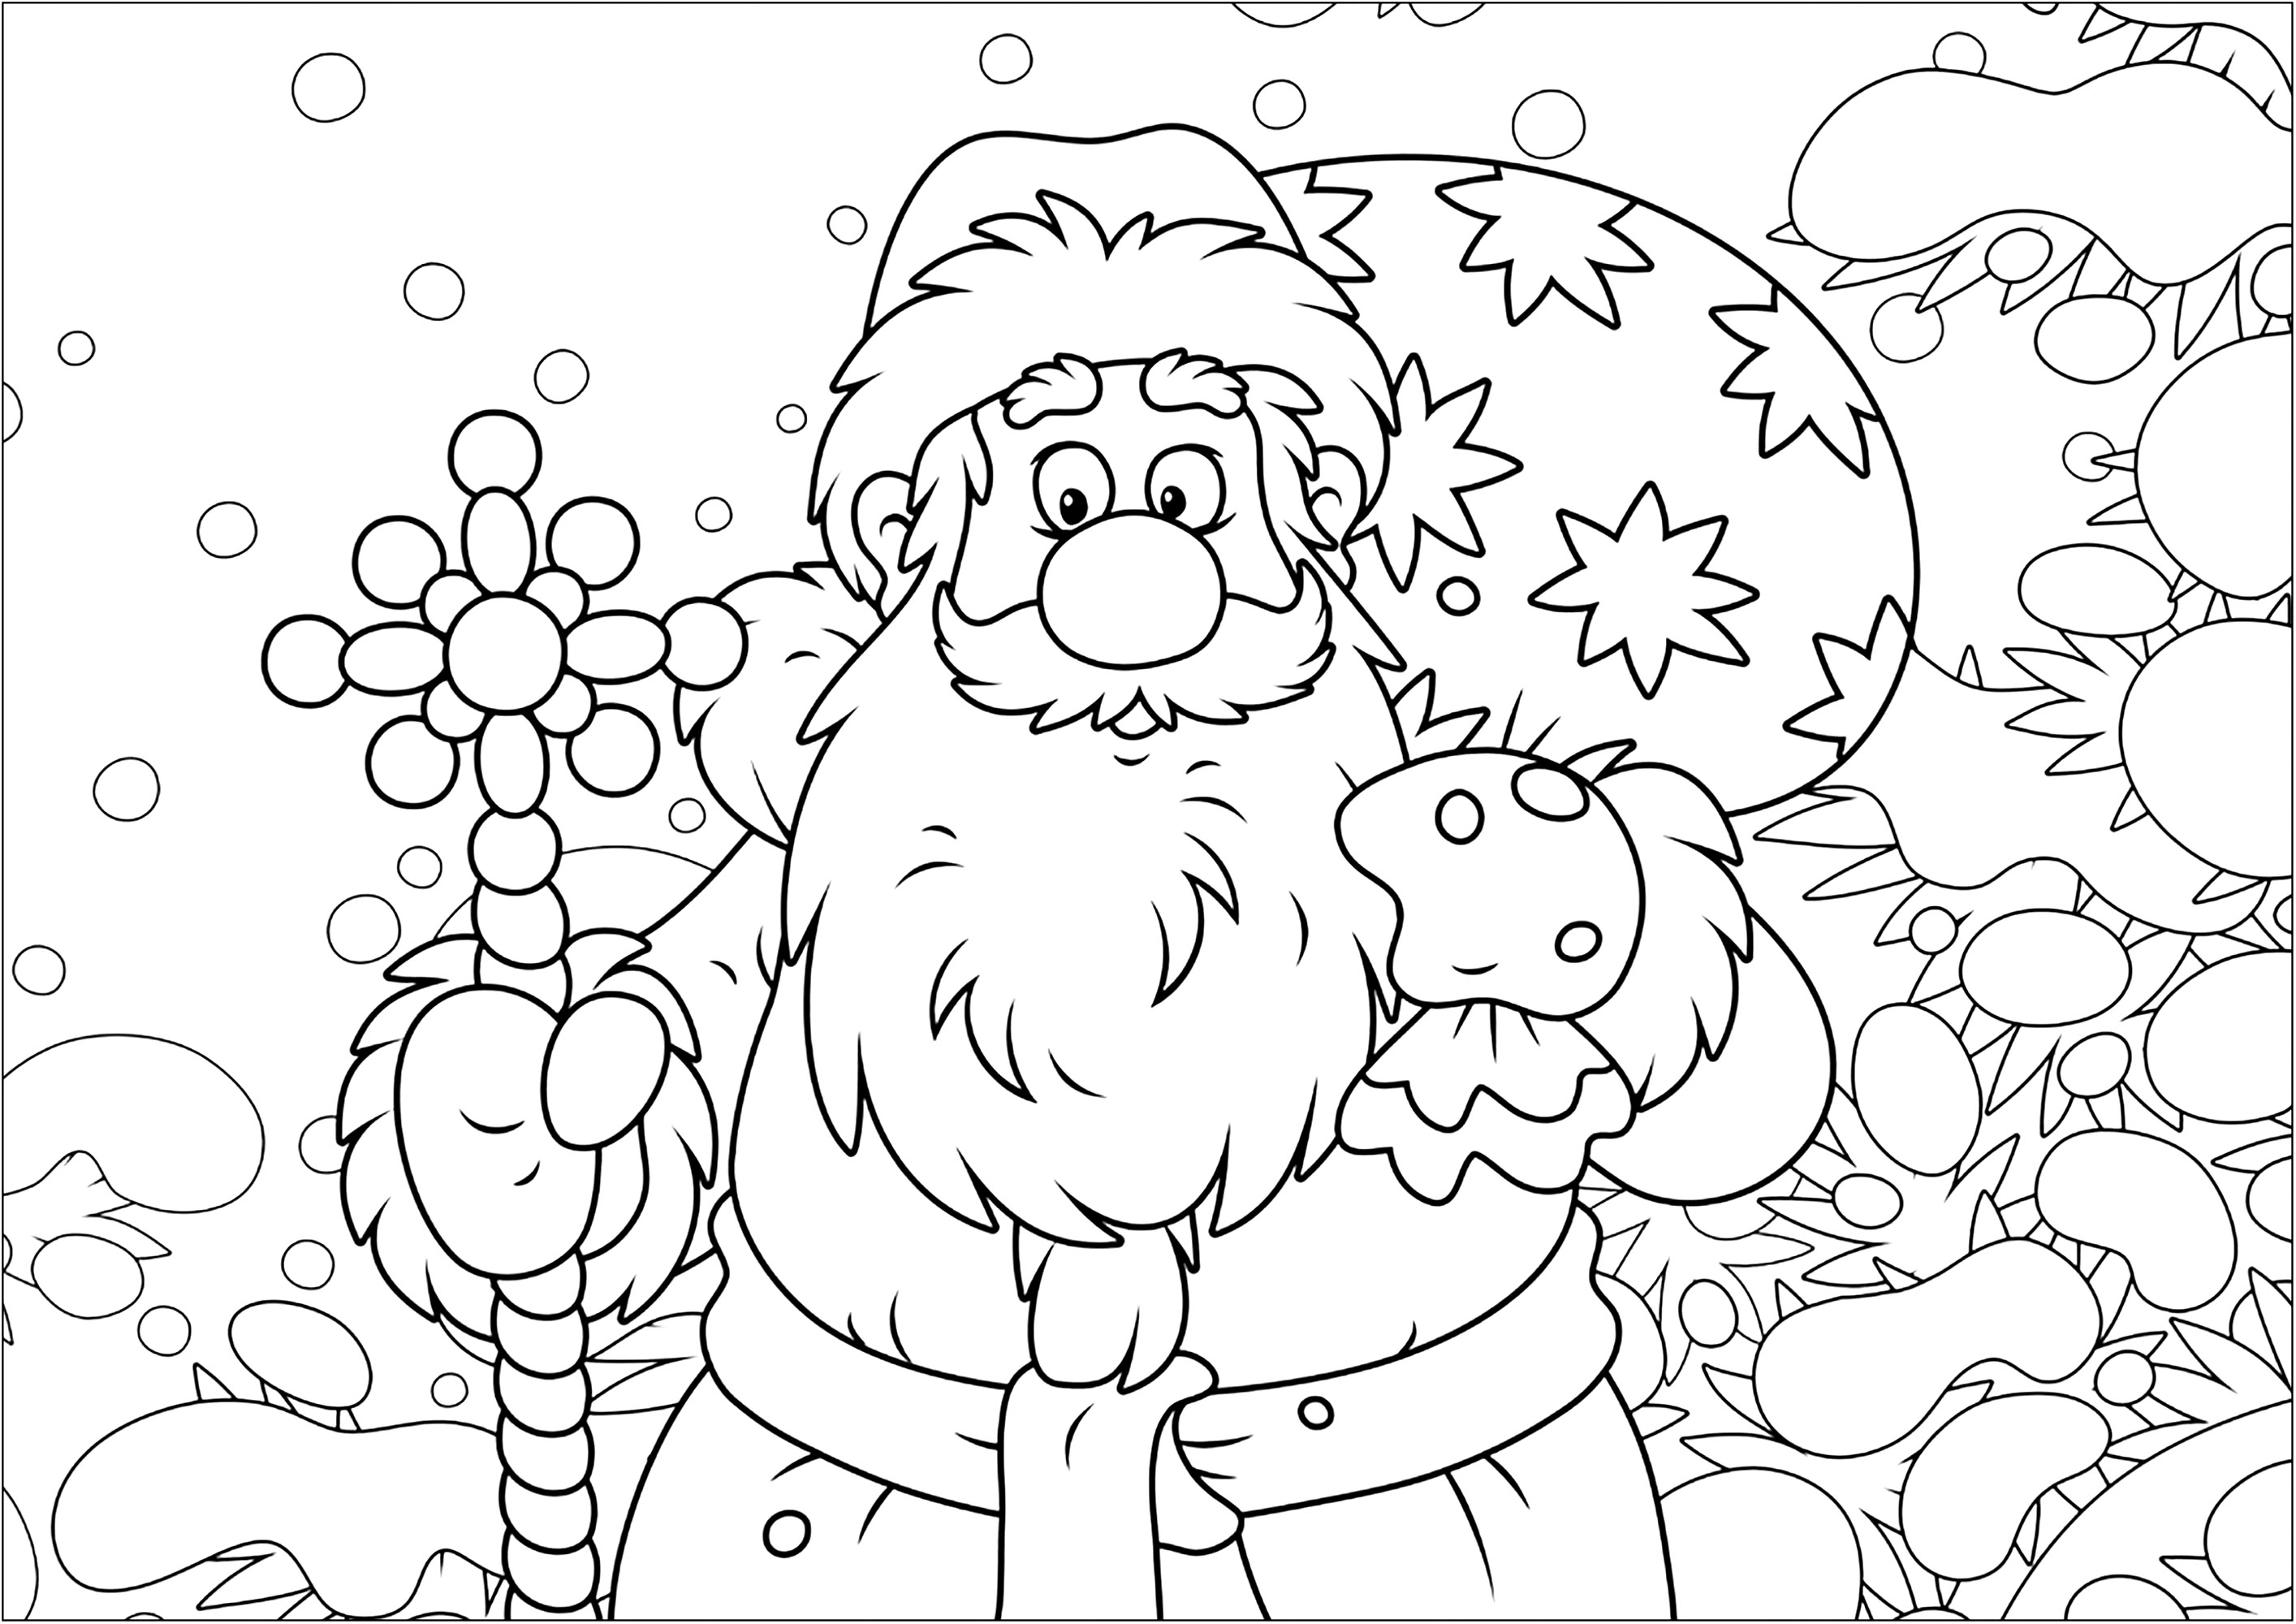 Um belo Pai Natal e o seu saco cheio de presentes. Uma bonita página para colorir de Natal, com uma paisagem de neve e o Pai Natal desenhado num estilo muito cartoon, Fonte : 123rf   Artista : Alex. Bannykh